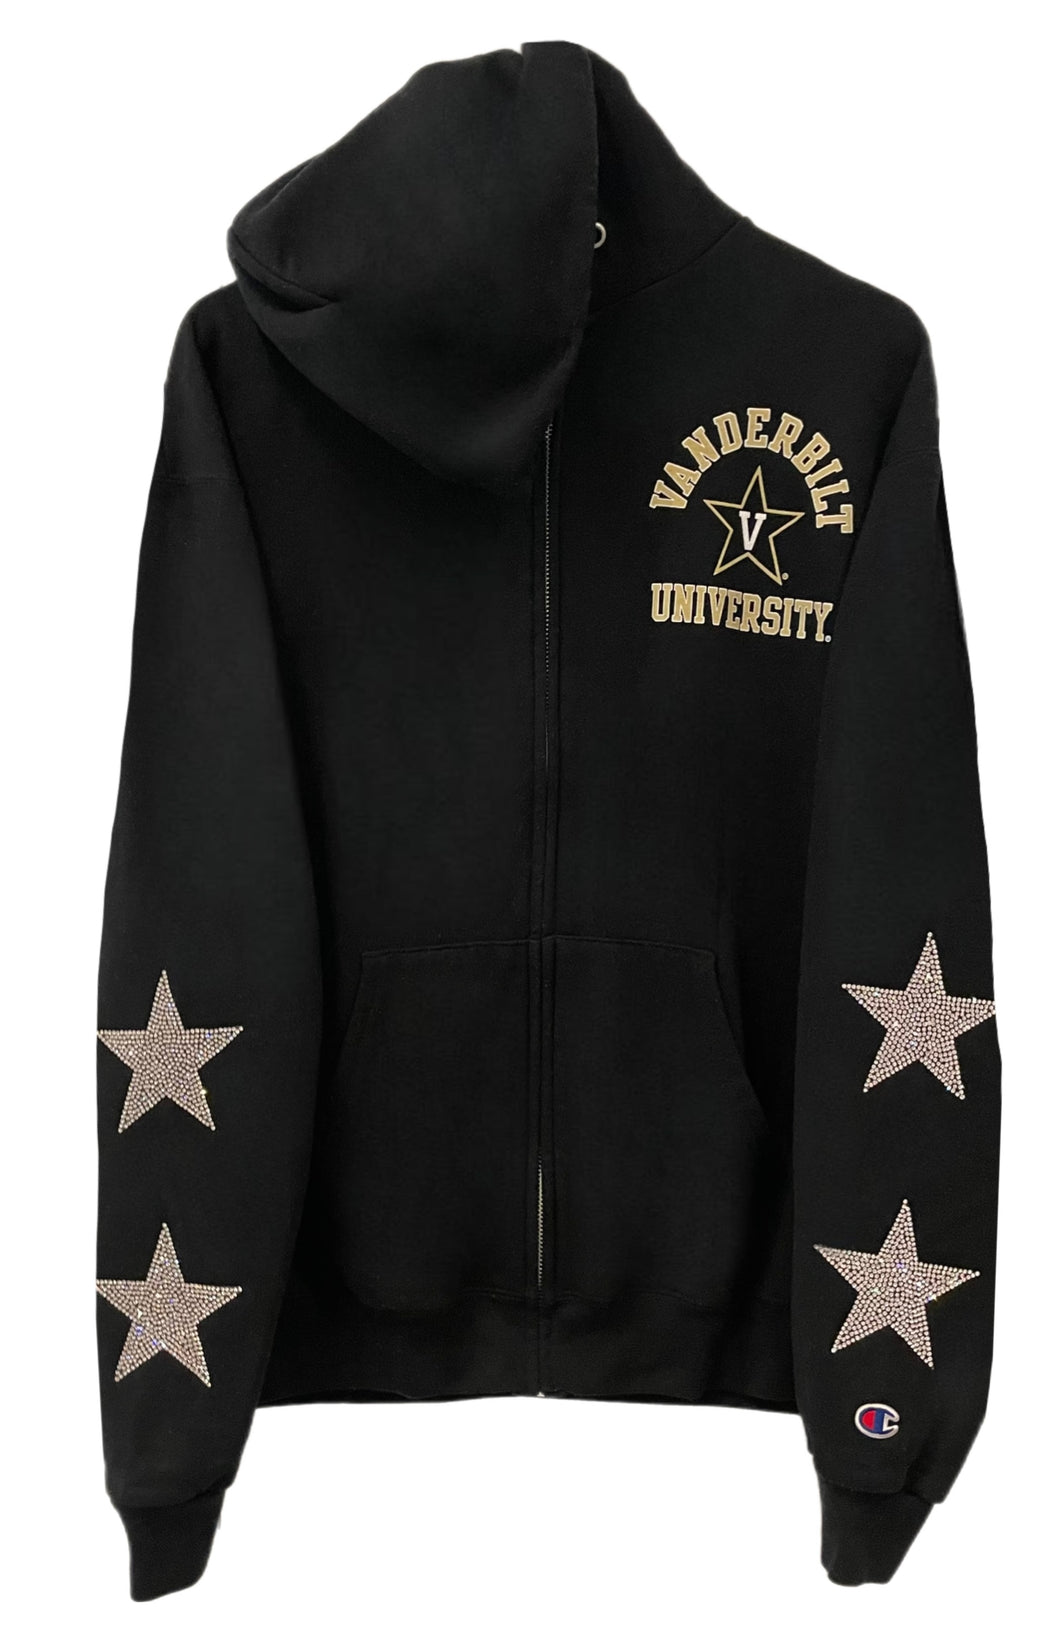 Vanderbilt University, One of a KIND Vintage Zip Up Hoodie with Crystal Star Design